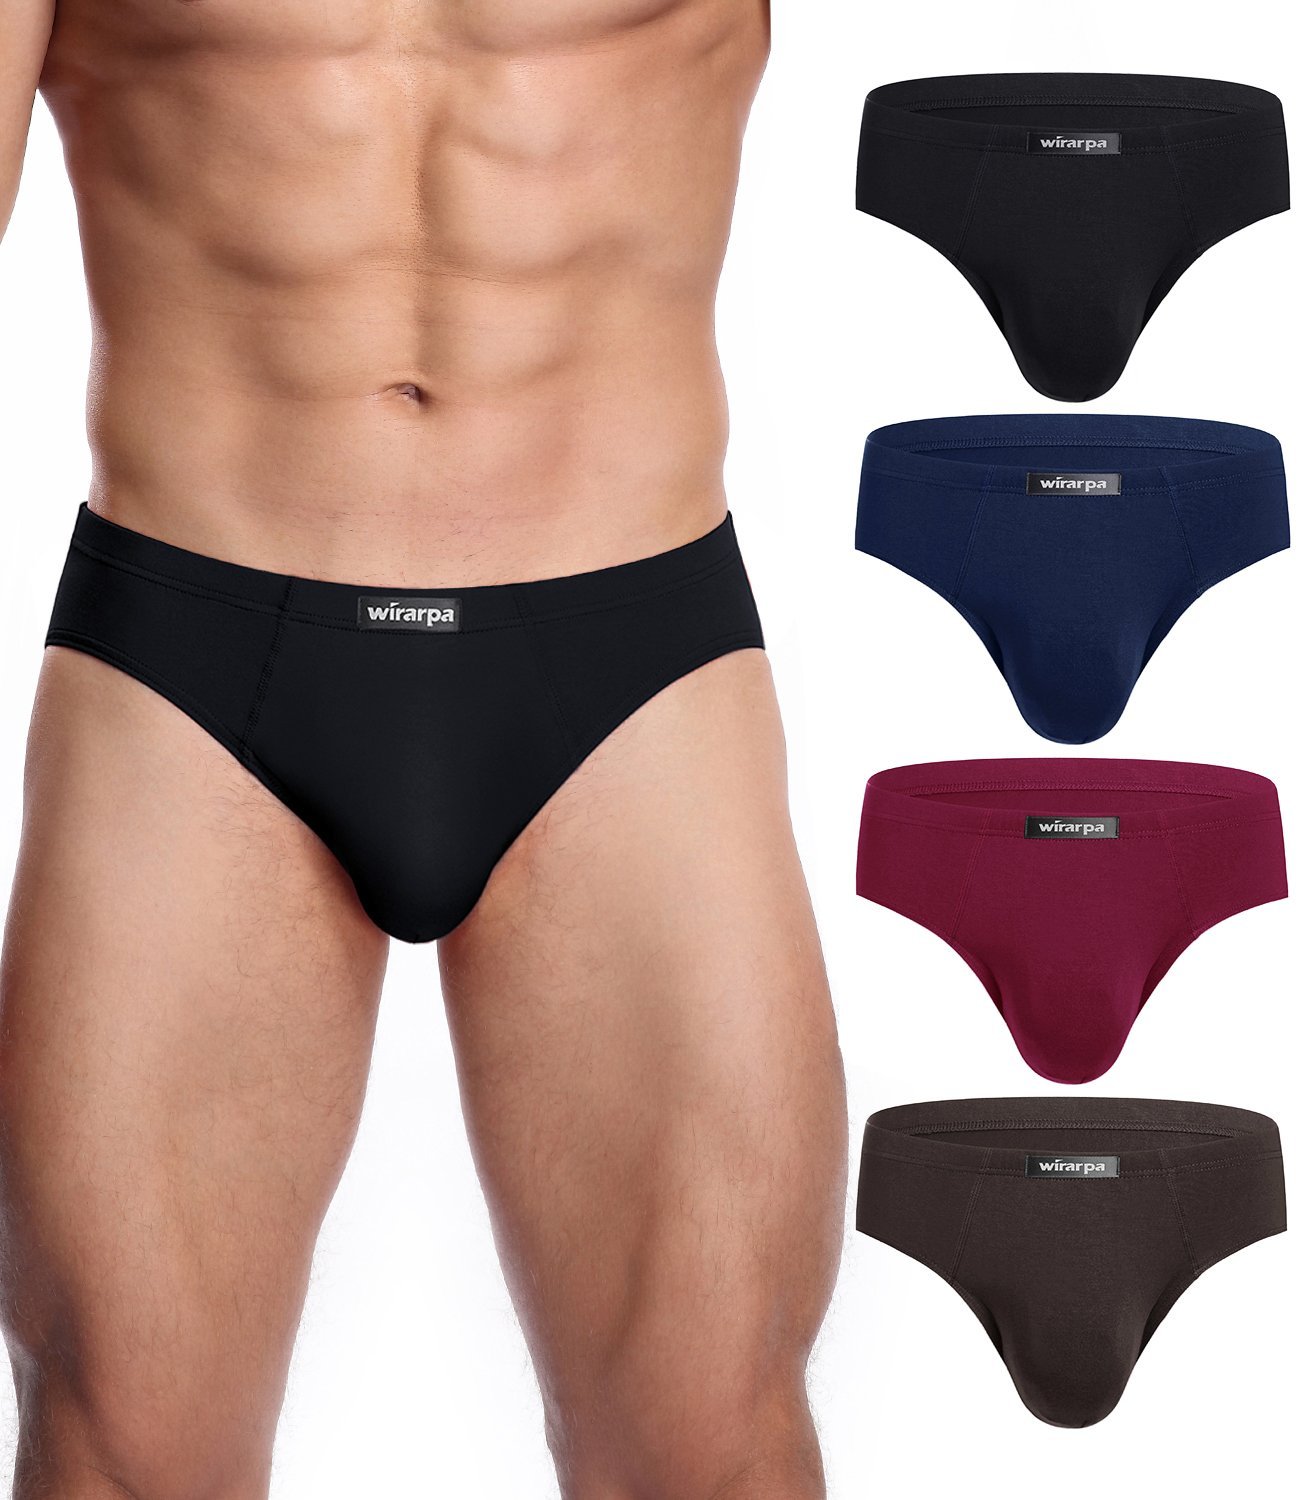 wirarpa Men's Underwear Micro Modal Trunks Briefs Short Leg Underwear 4  Pack Sizes S-3XL